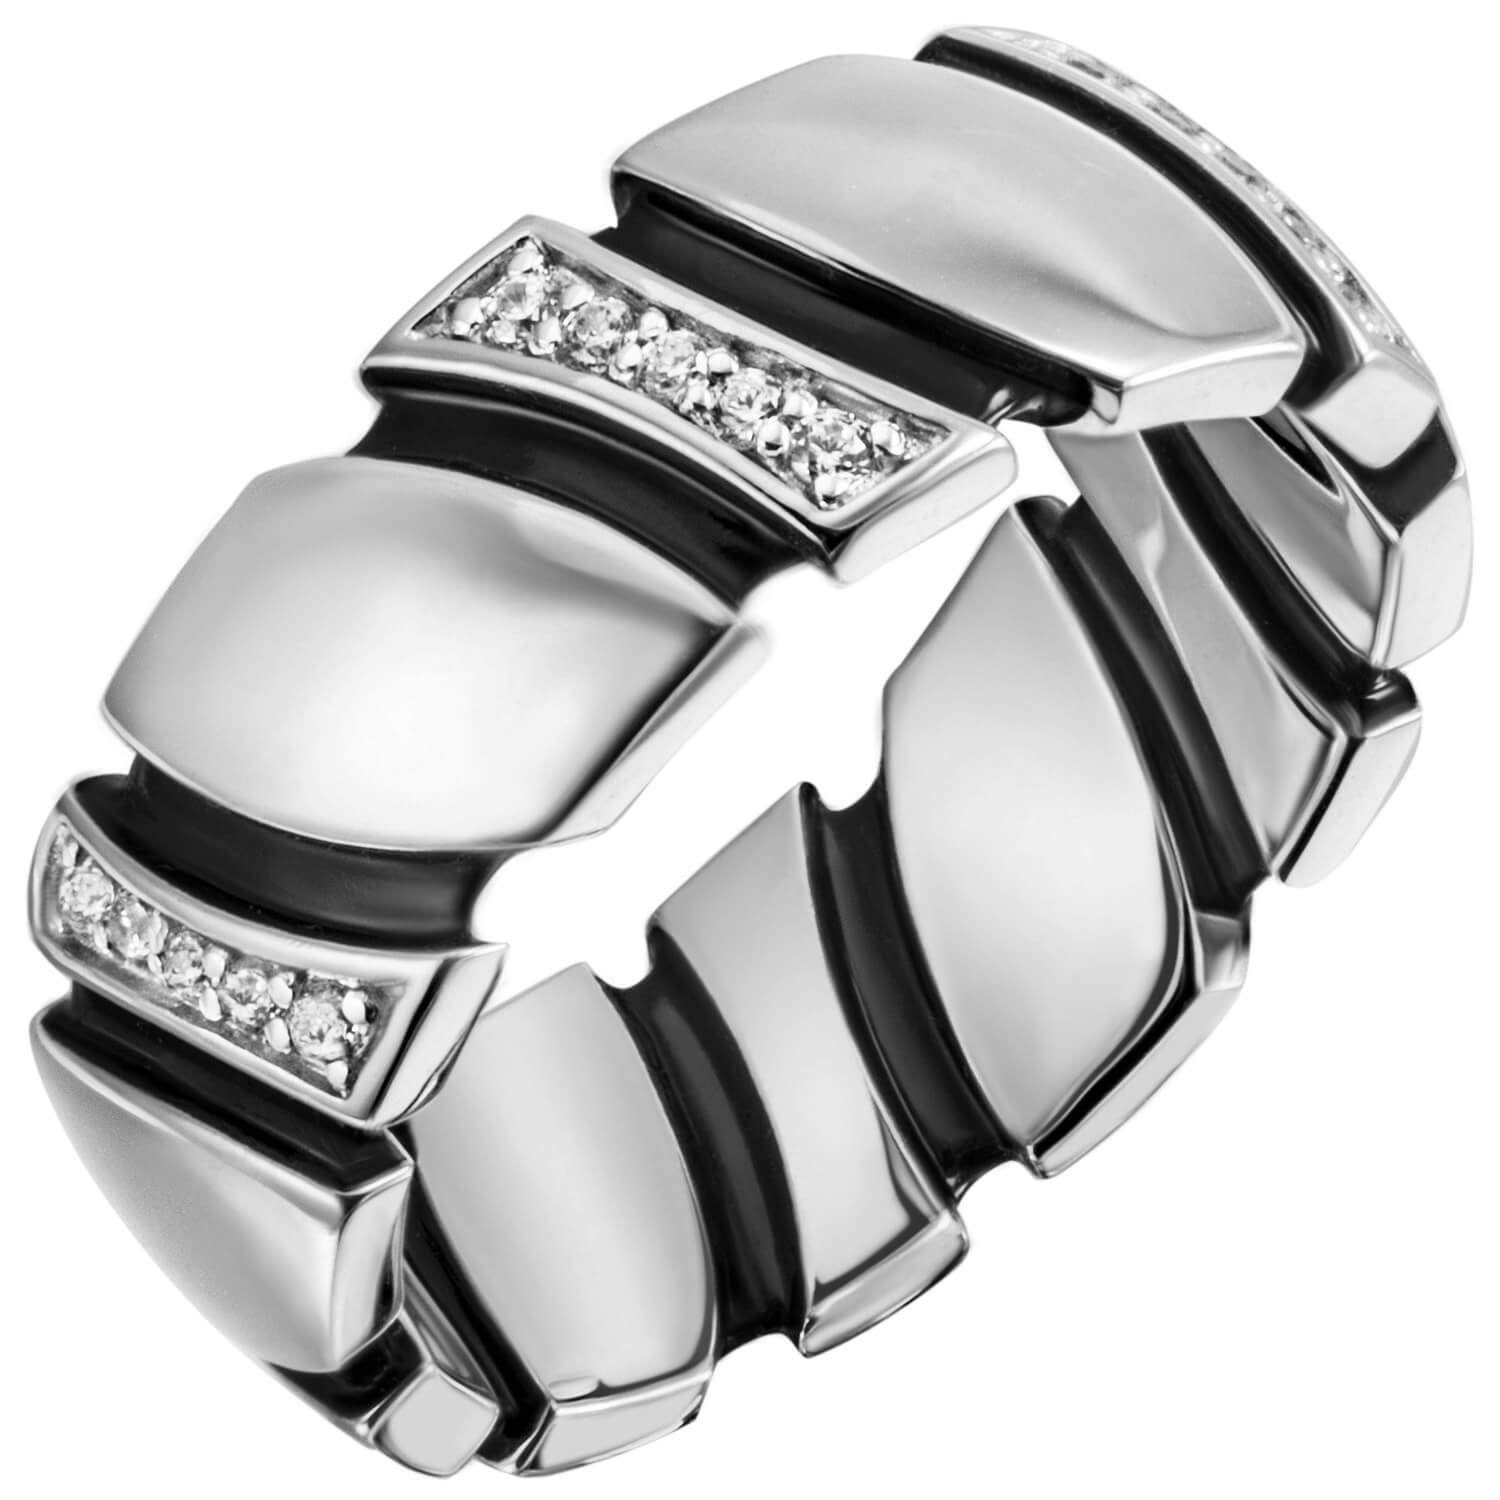 Schmuck Krone Silberring Ring Damenring 6,8mm 30 Zirkonia 925 Silber rhodiniert schwarze Lackauflagen, Silber 925